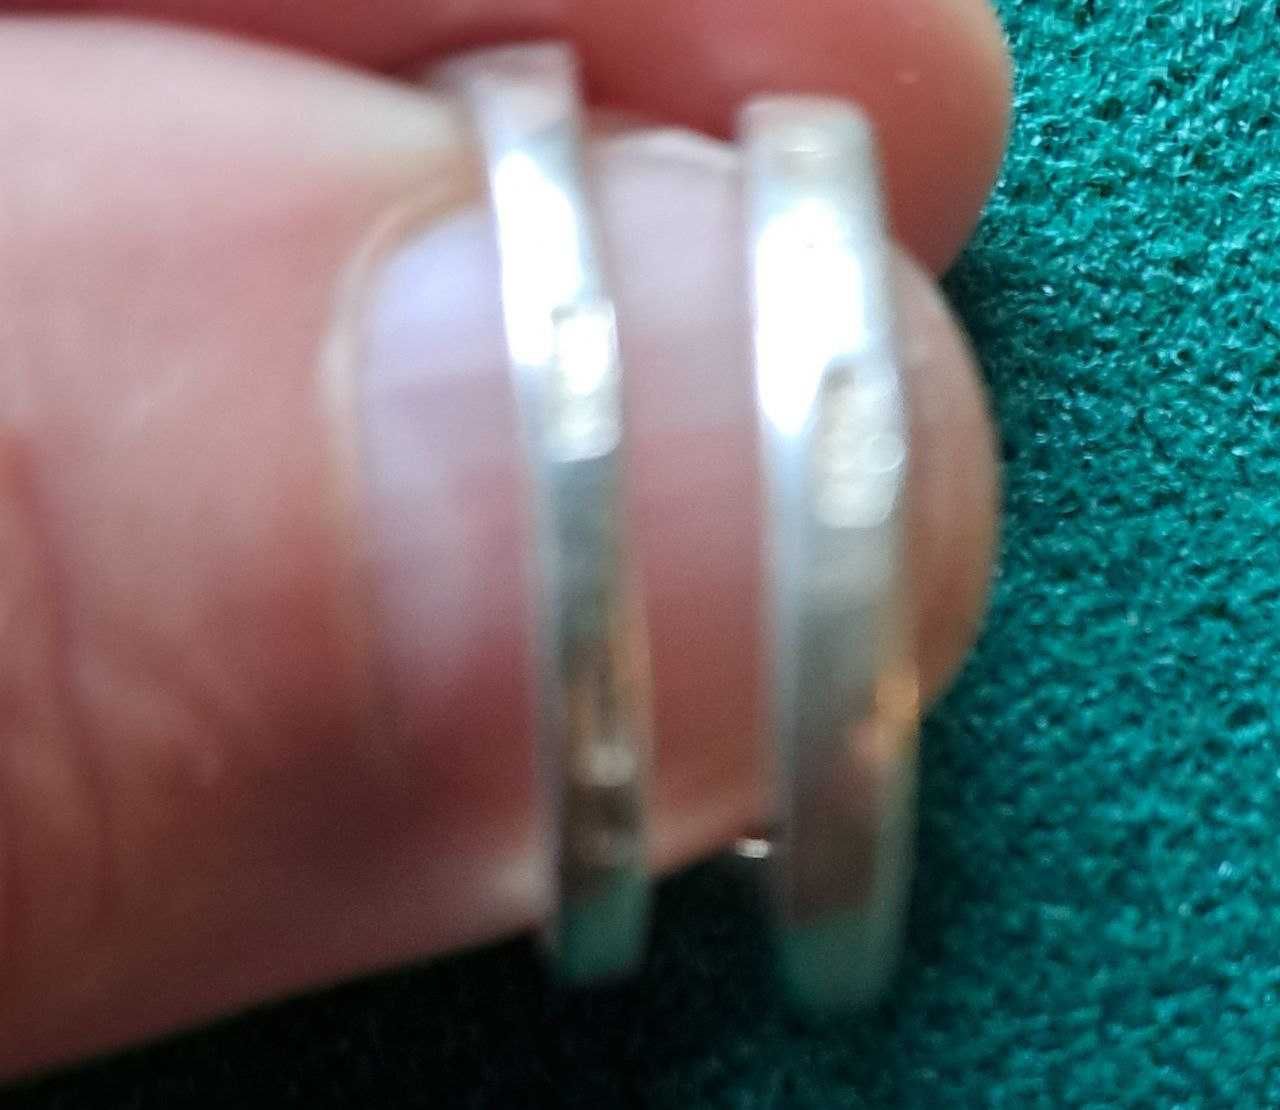 серебрянные кольца 17 размер